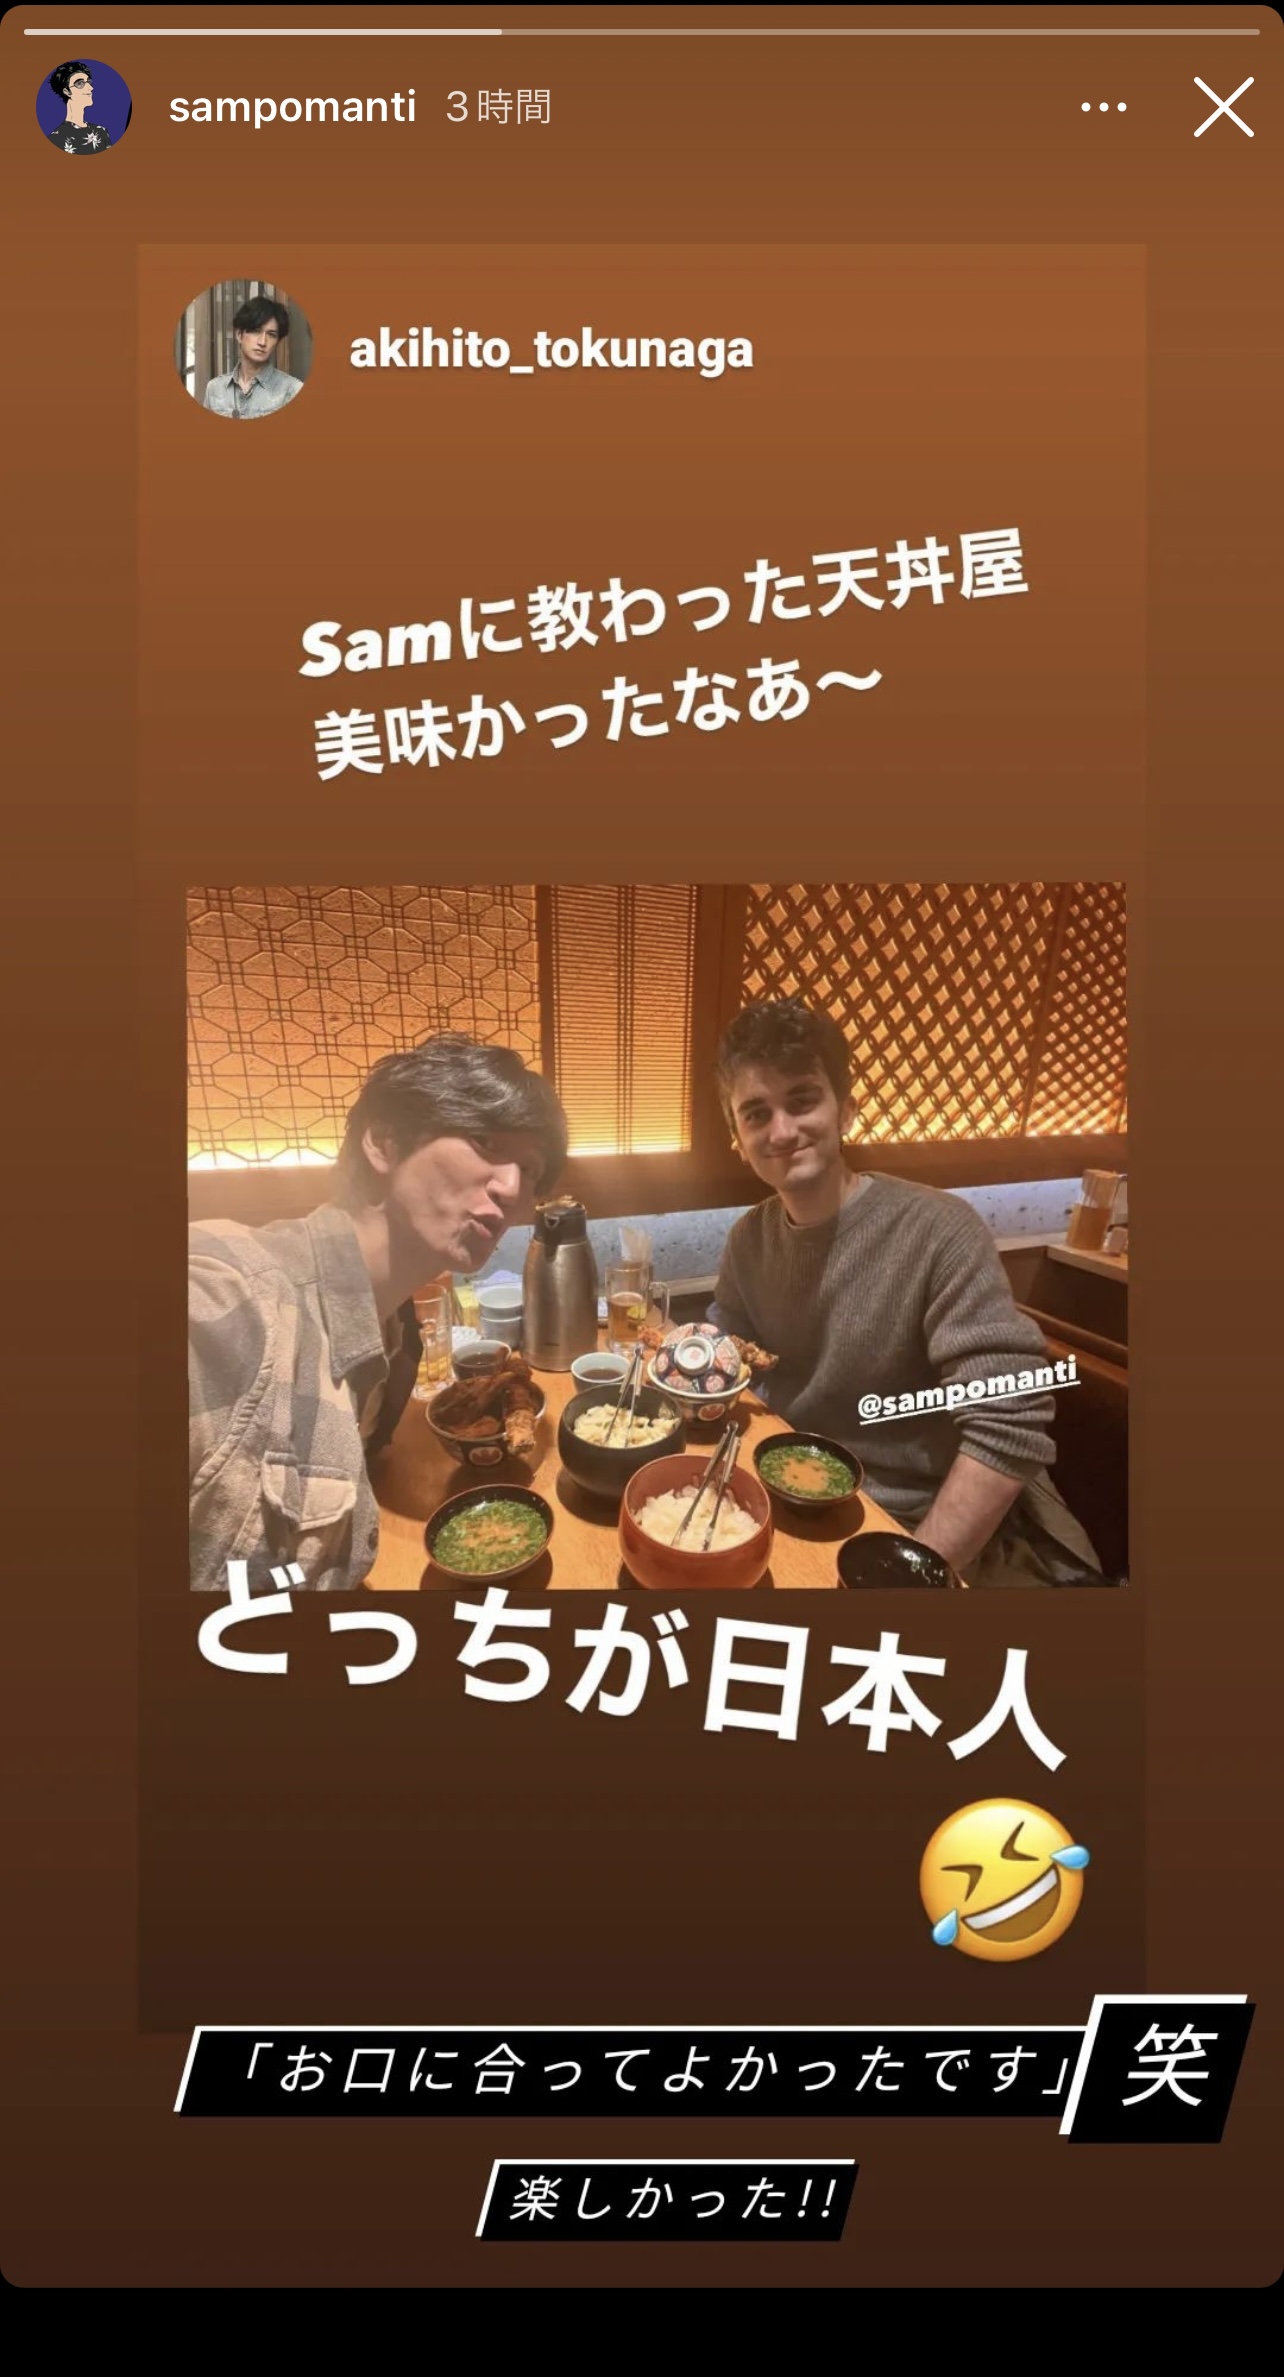 徳永暁人とサム・ポマンティが食事をしている写真